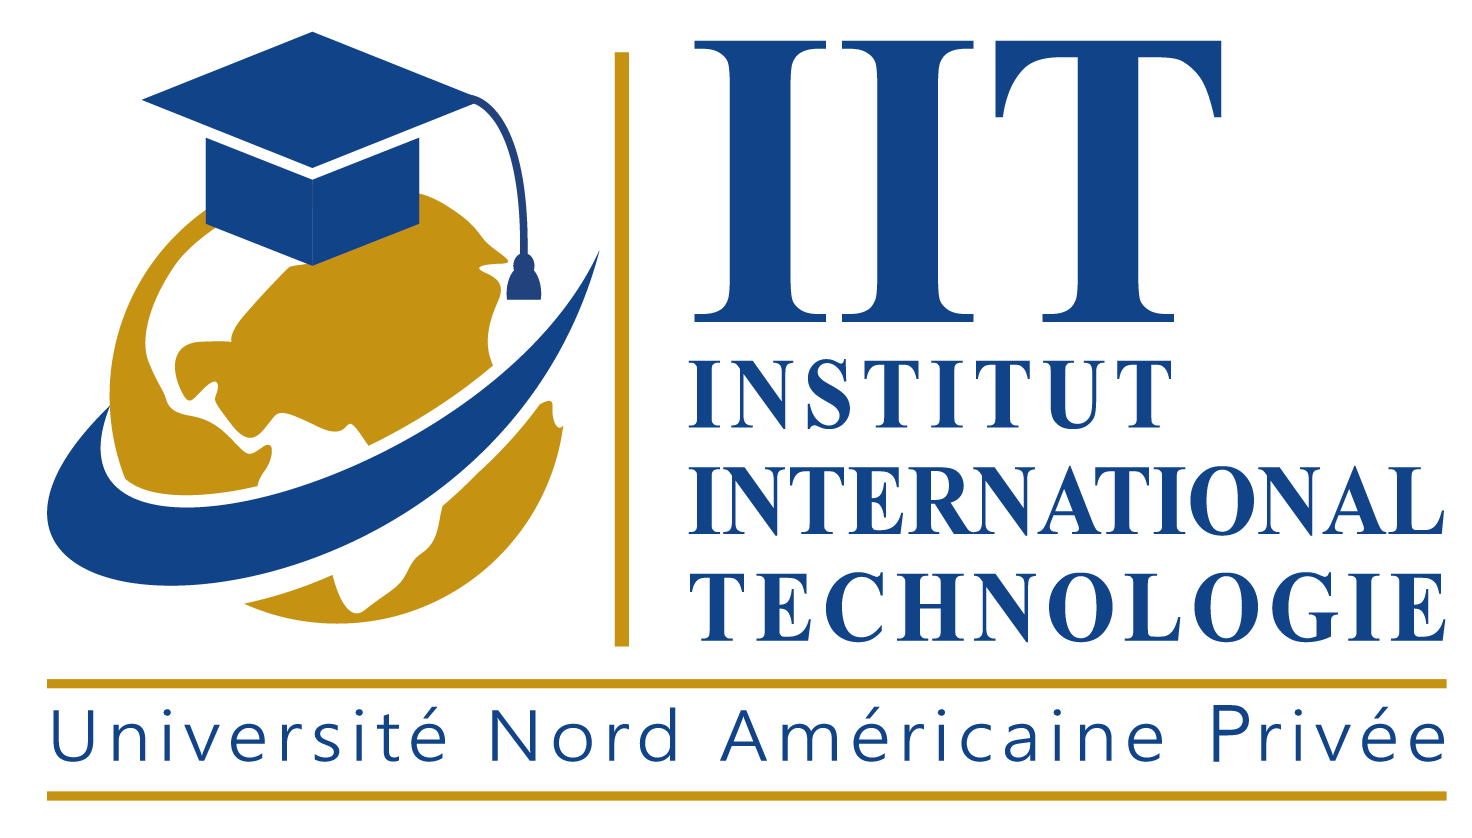 Génie informatique - Formation génie informatique Tunisie | IIT